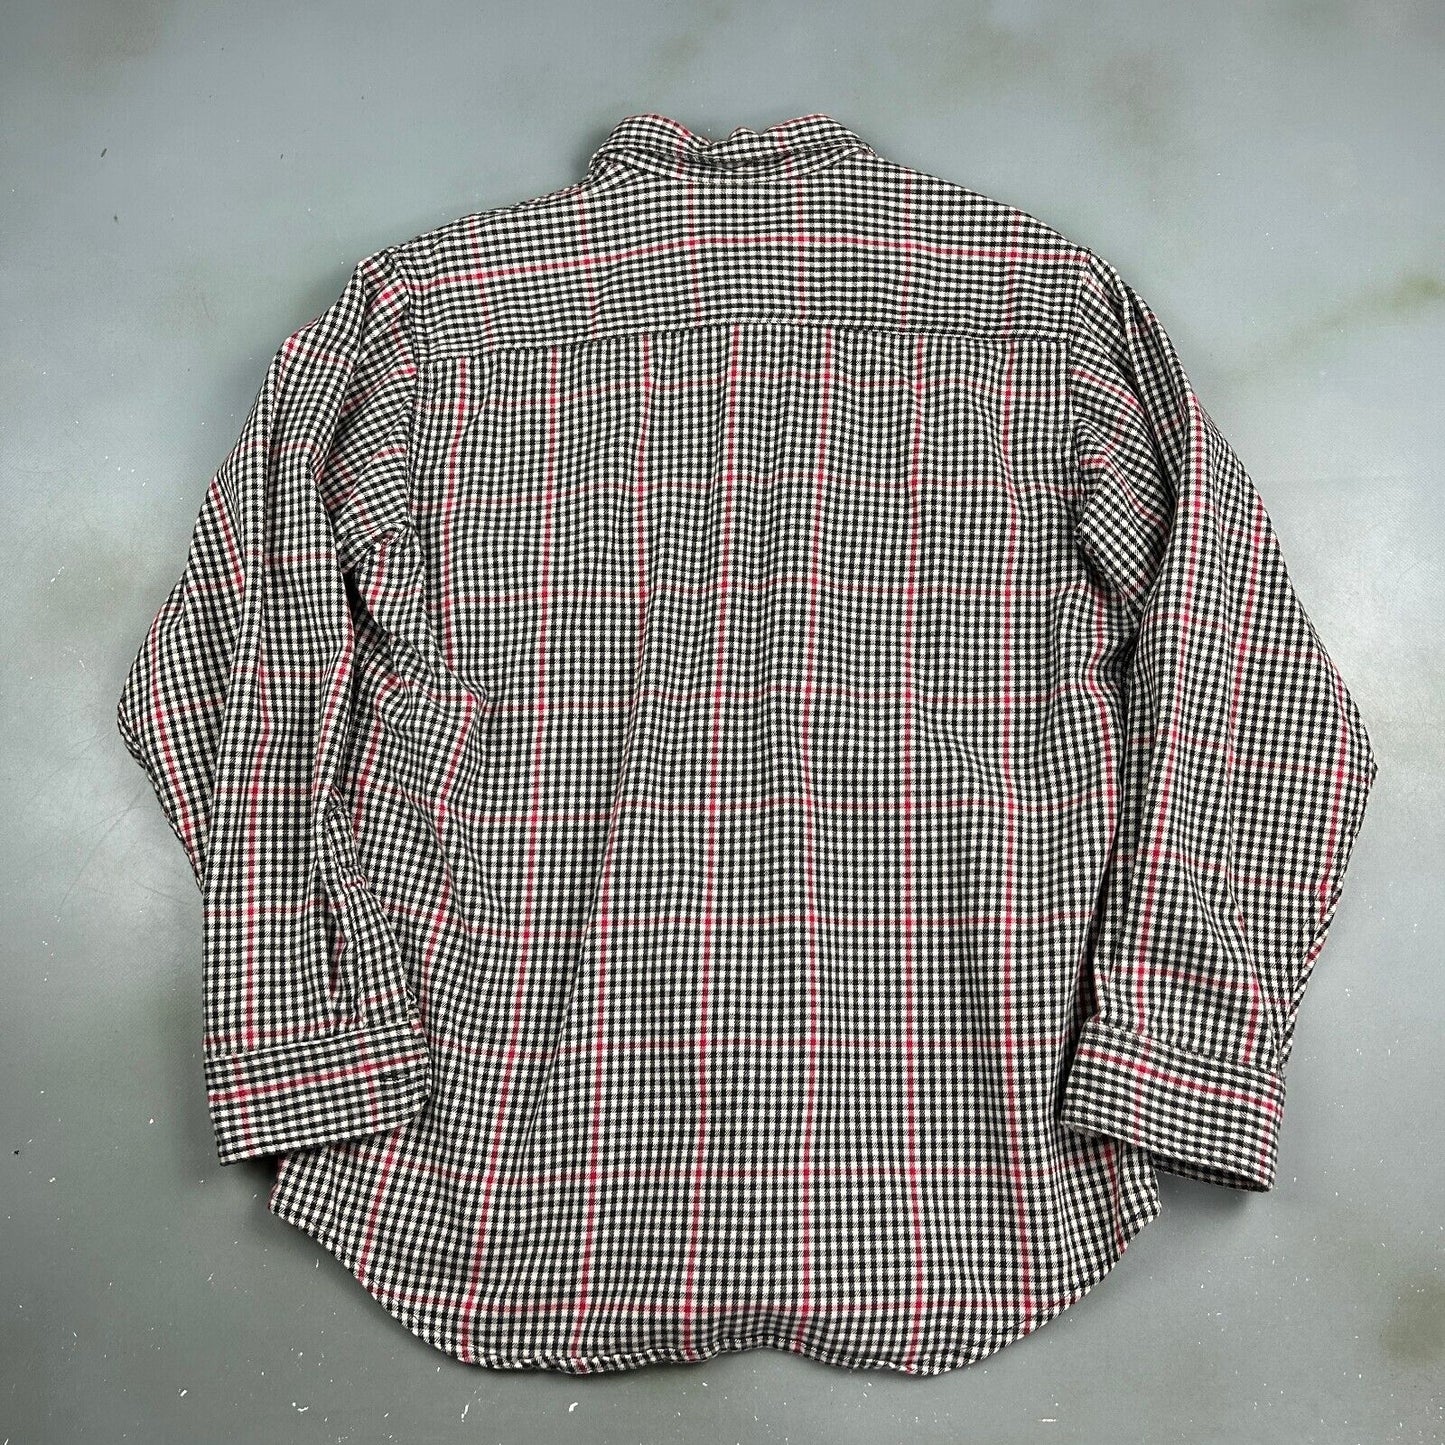 VINTAGE 90s Eddie Bauer Mckinley Cloth Button Up Shirt sz Medium Adult